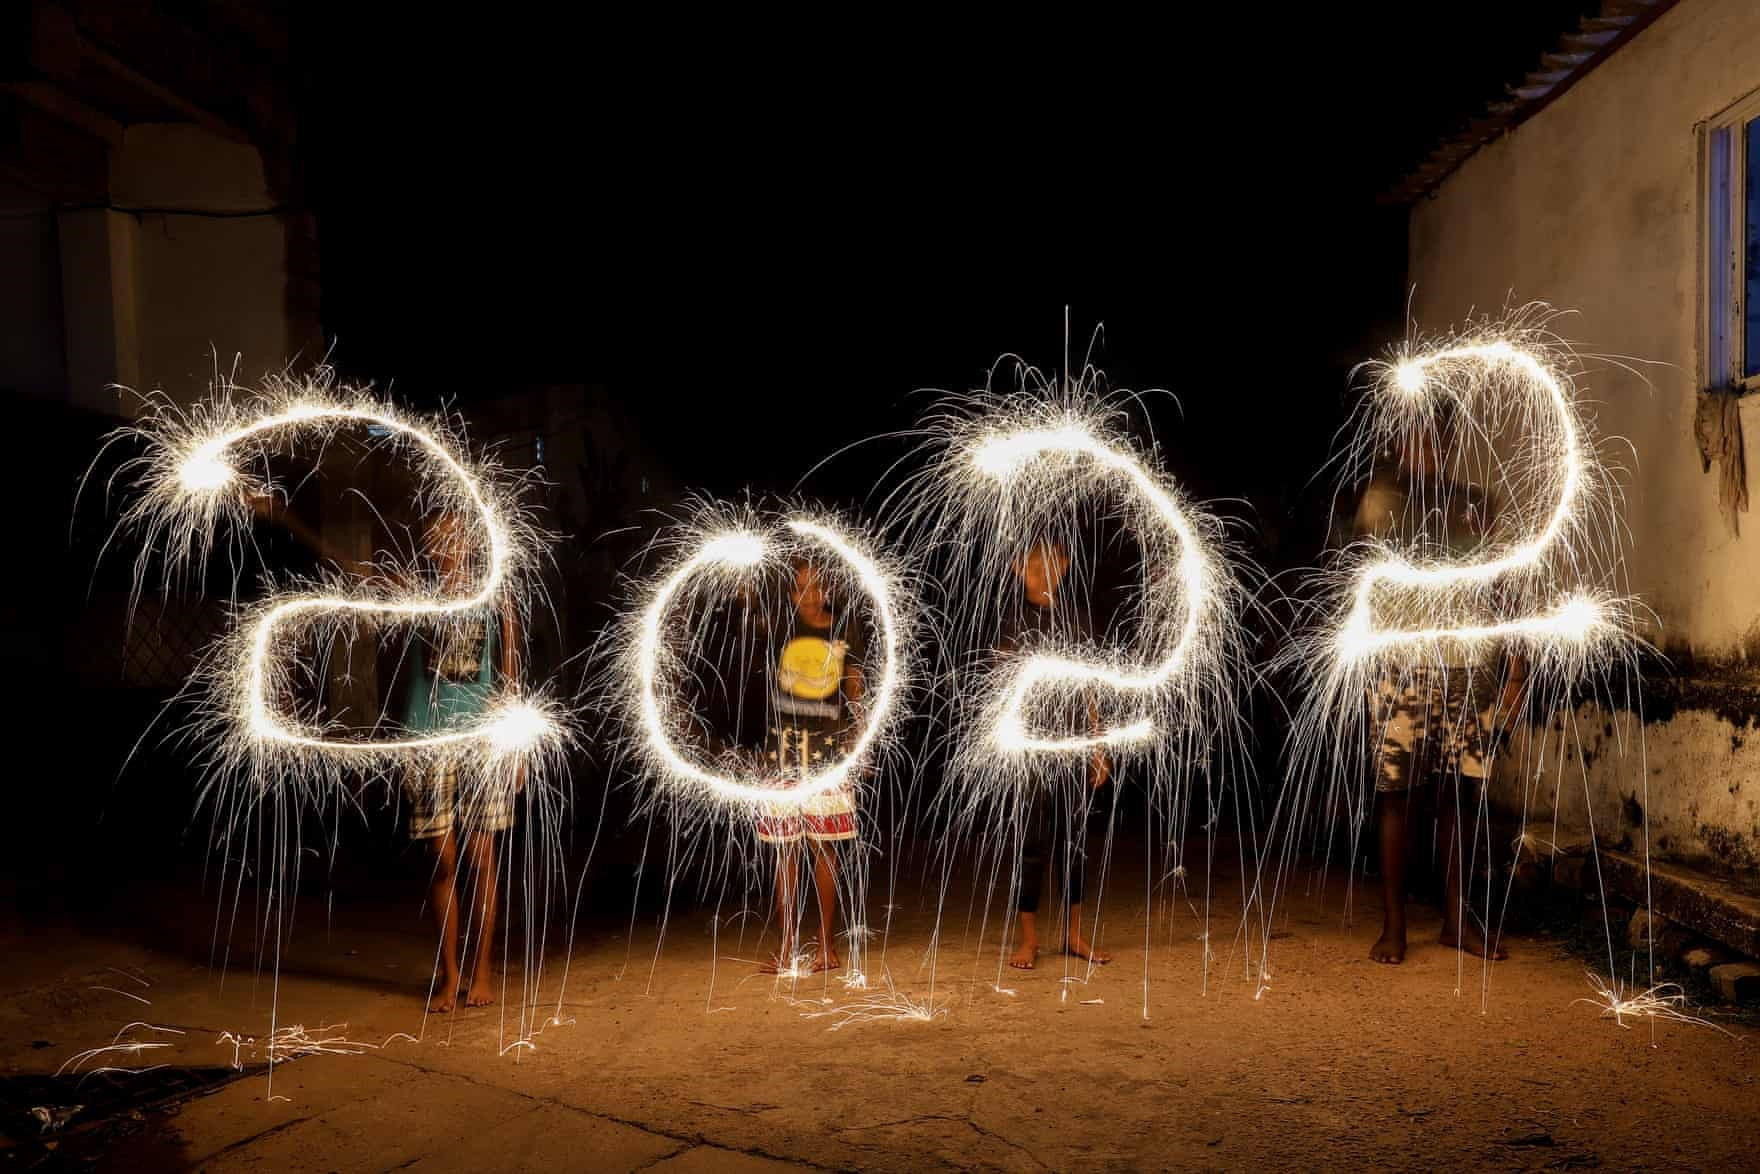 Trẻ em Sri Lanka viết con số “2022” bằng pháo trong lễ mừng năm mới ở thủ đô Colombo. Ảnh: EPA